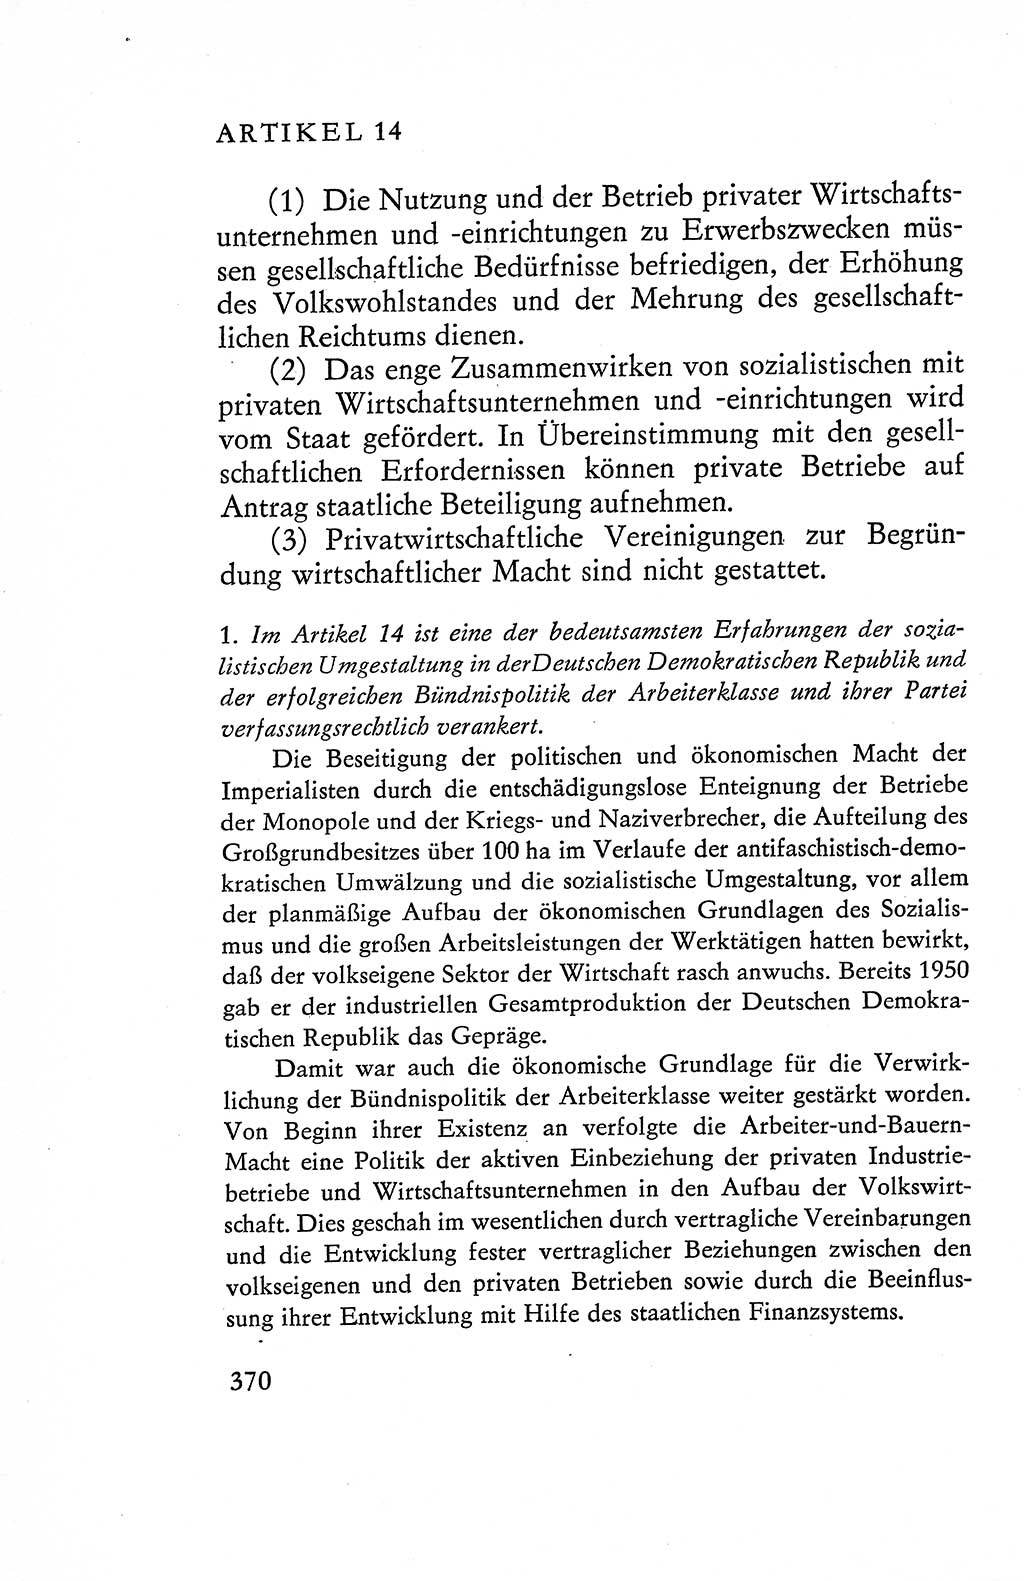 Verfassung der Deutschen Demokratischen Republik (DDR), Dokumente, Kommentar 1969, Band 1, Seite 370 (Verf. DDR Dok. Komm. 1969, Bd. 1, S. 370)